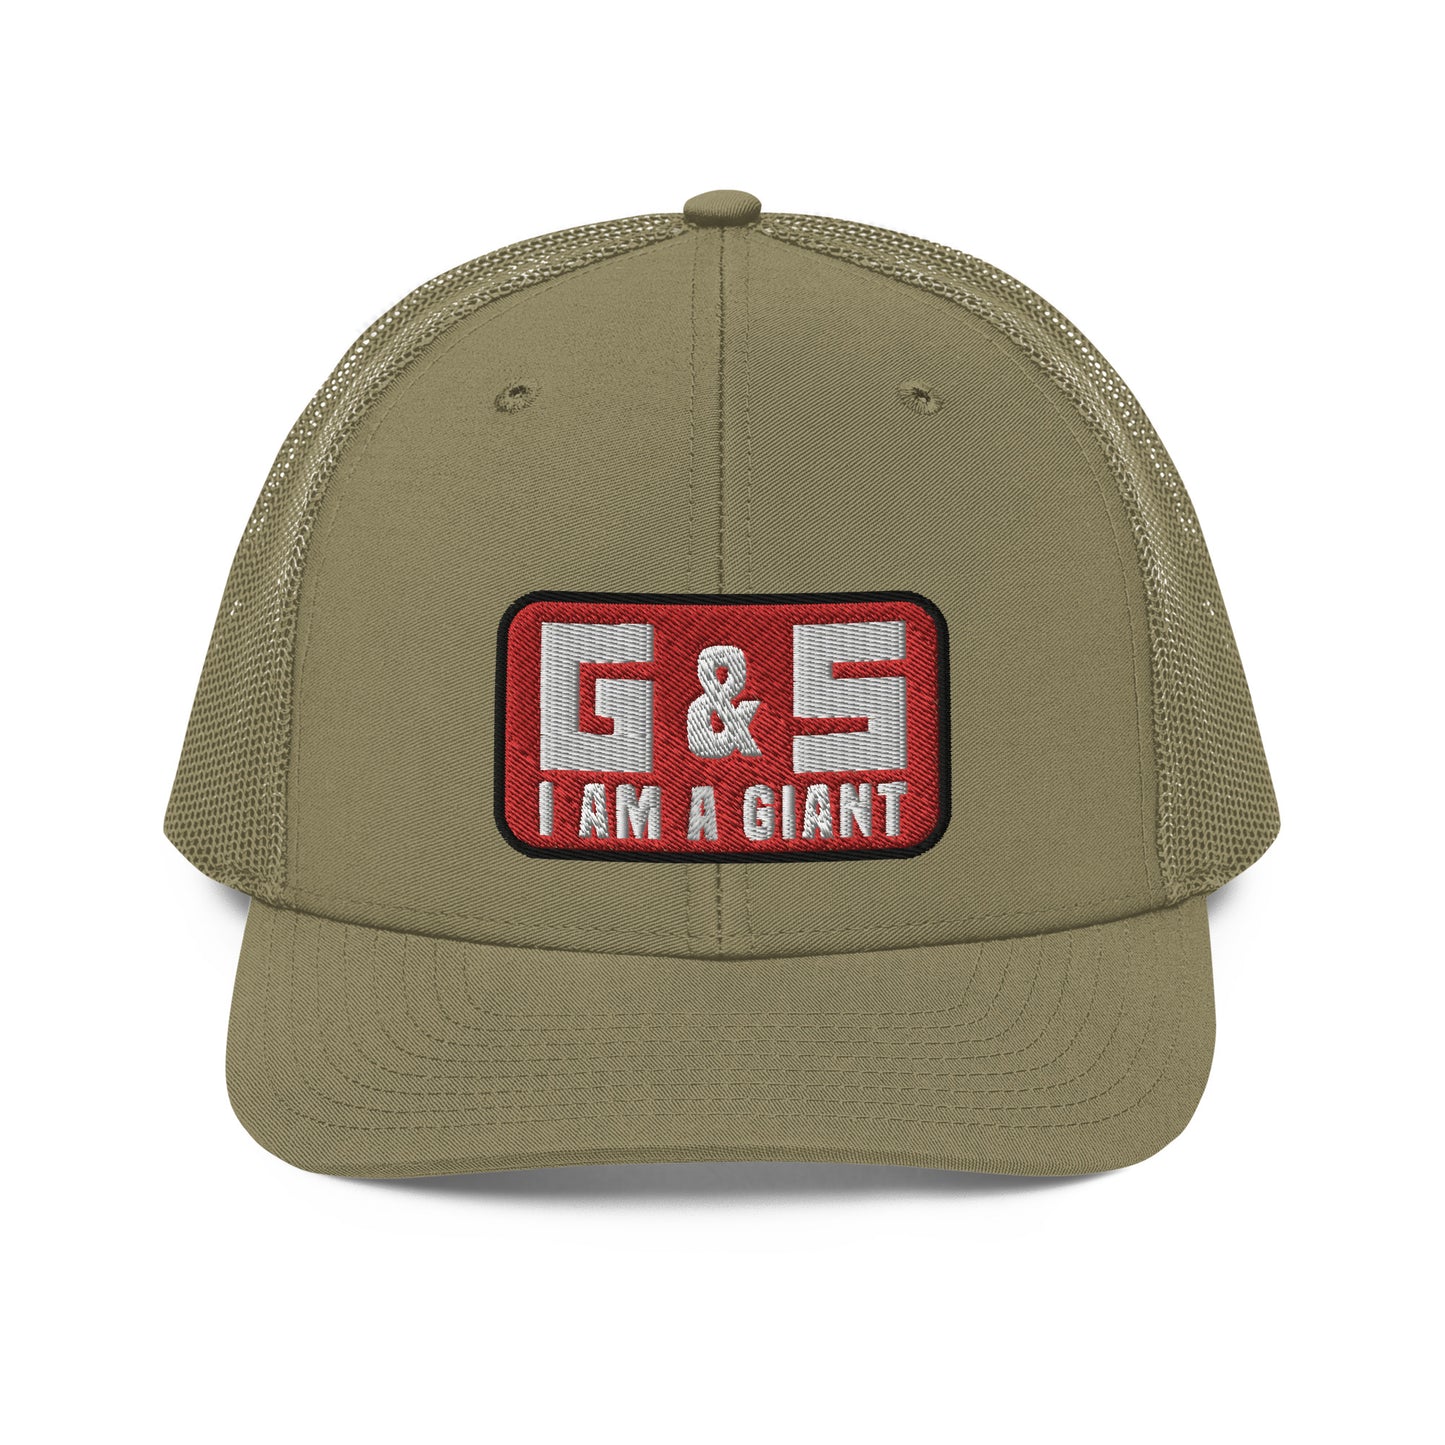 G & S I Am A Giant Trucker Cap